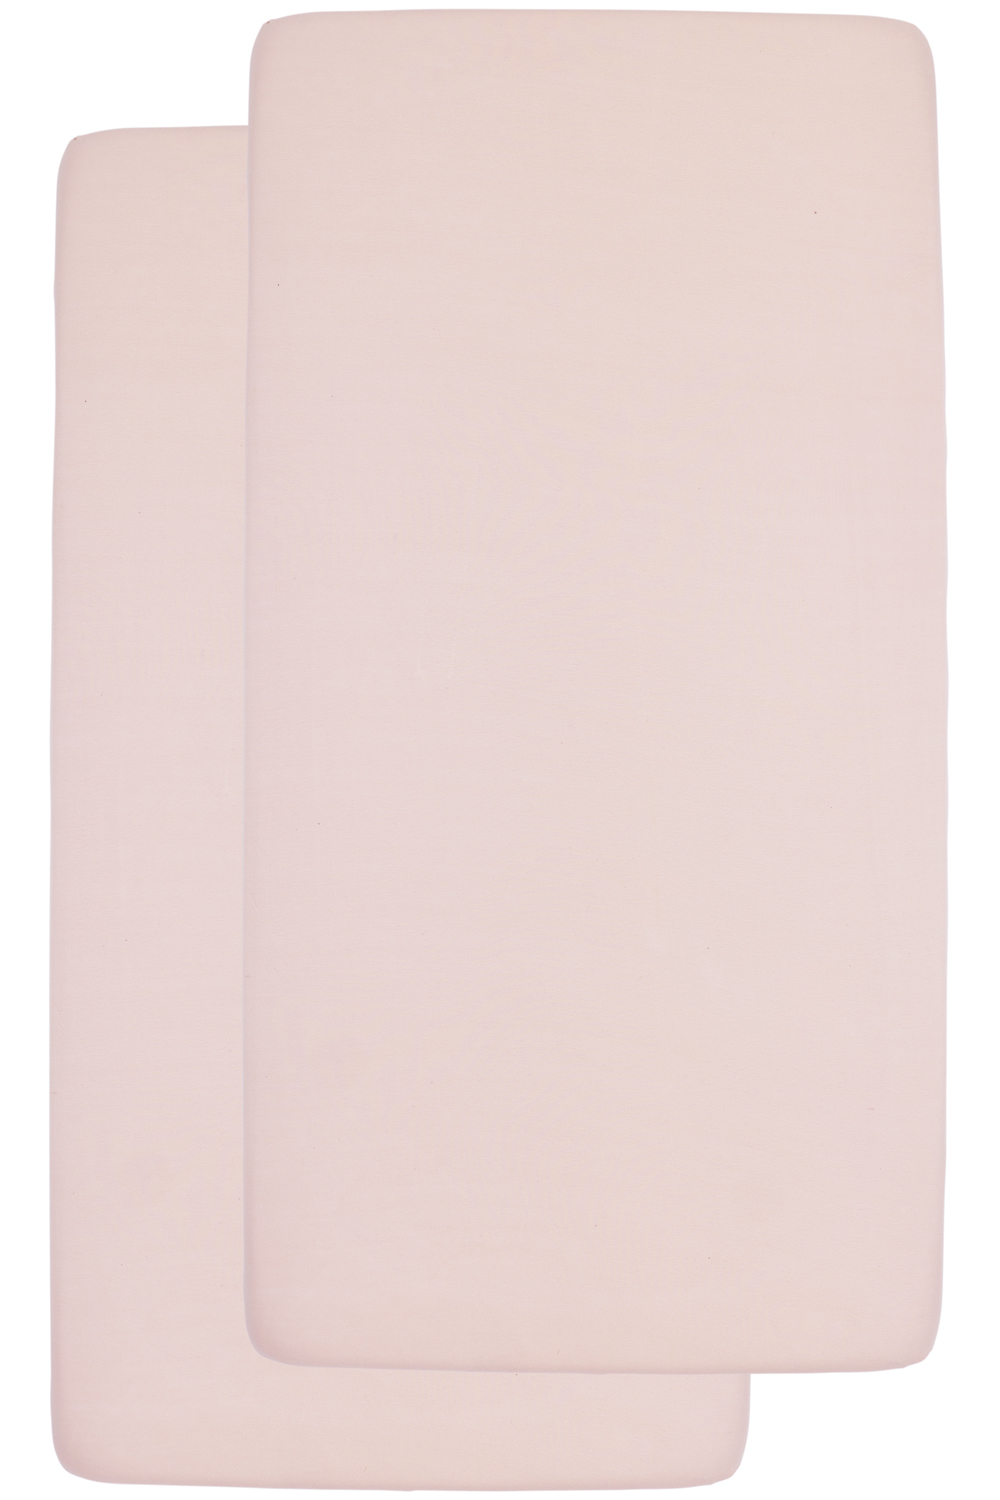 Spannbettlaken Kinderbett 2er pack Uni - soft pink - 60x120cm